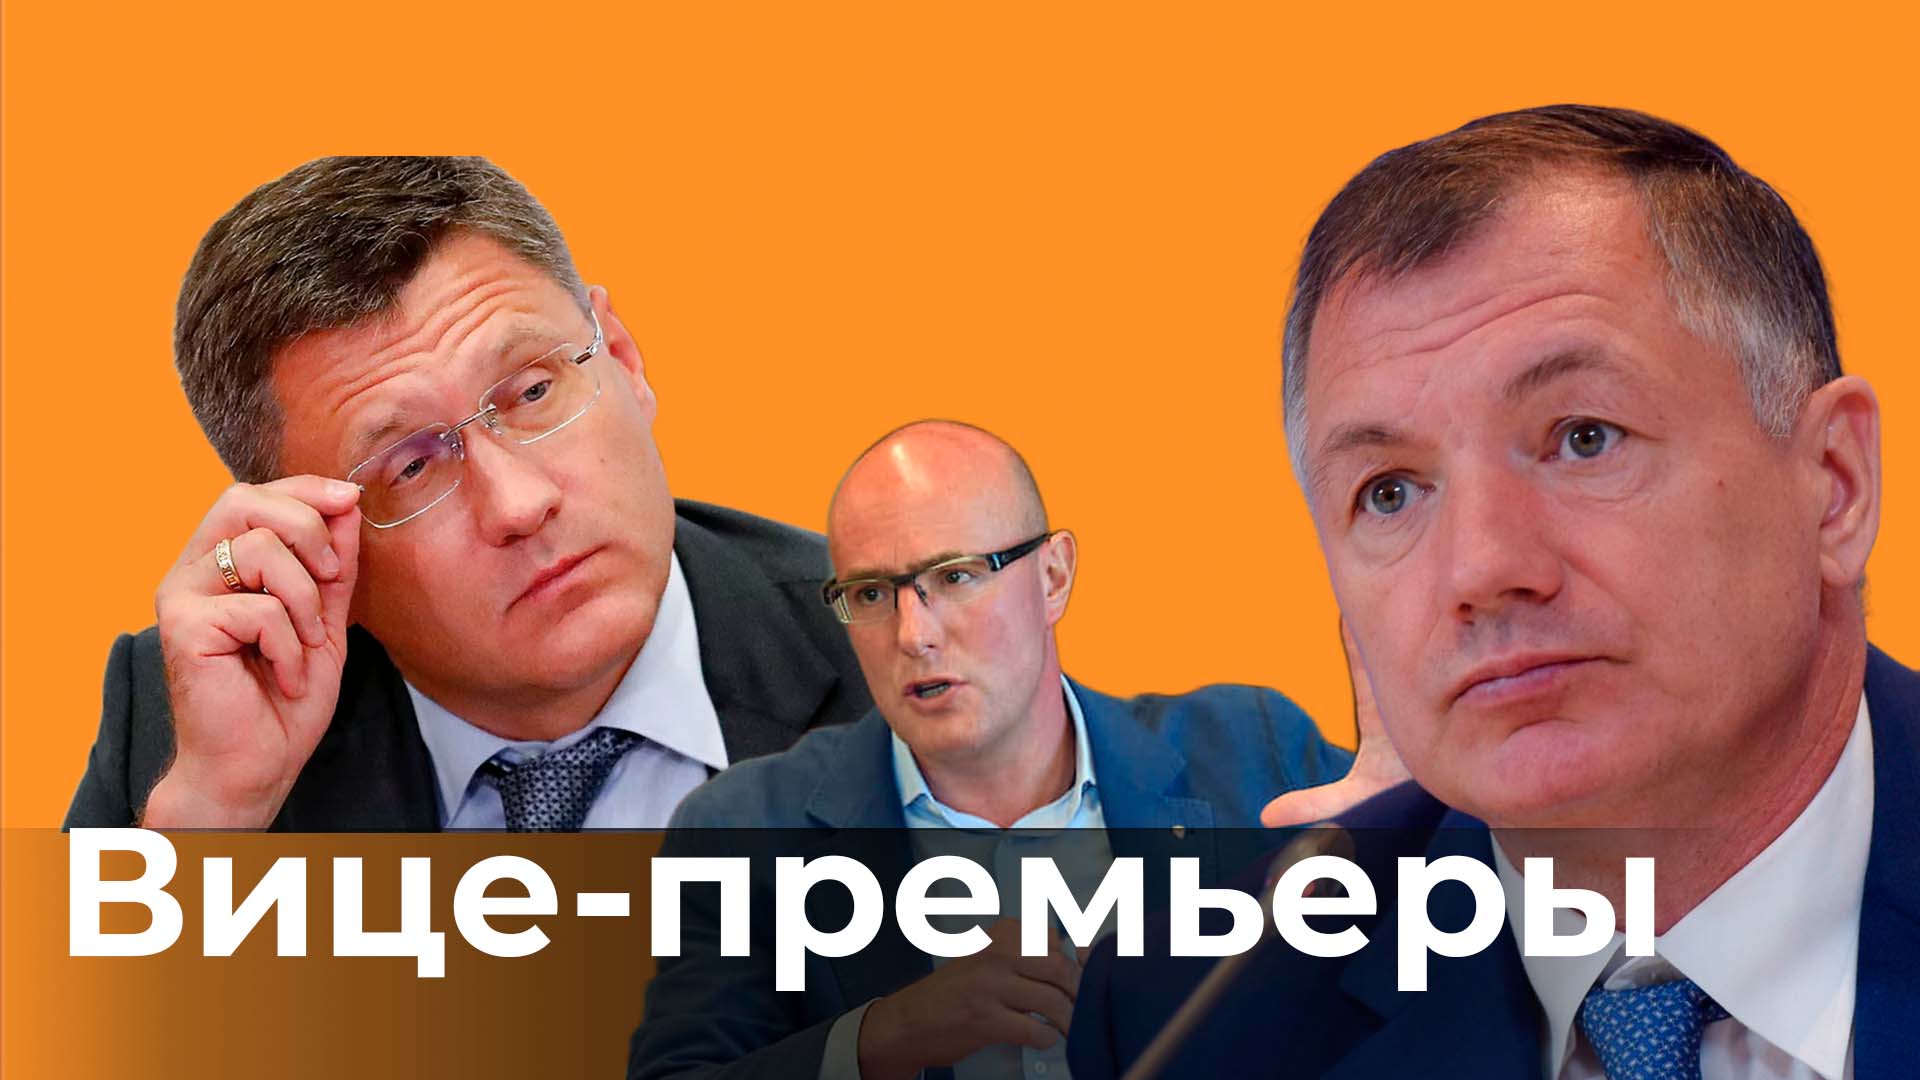 Кандидаты в вице-премьеры России. Кто они и чем займутся?